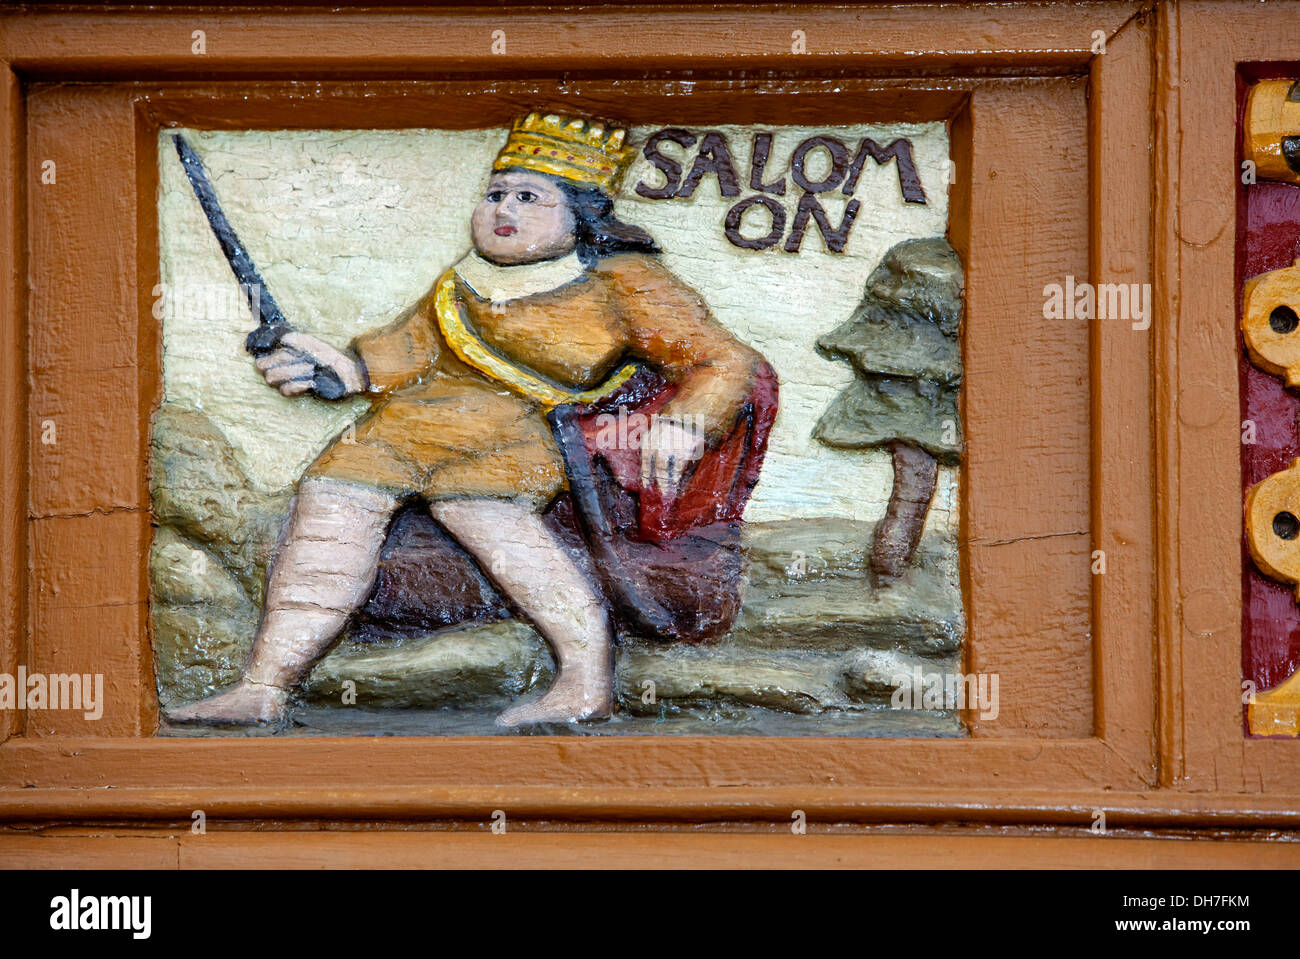 Jedidiah ou Salomon, roi d'Israël, 10ème siècle avant J.-C., la vieille école latine, sculptures en bois, Alfeld, Allemagne Banque D'Images